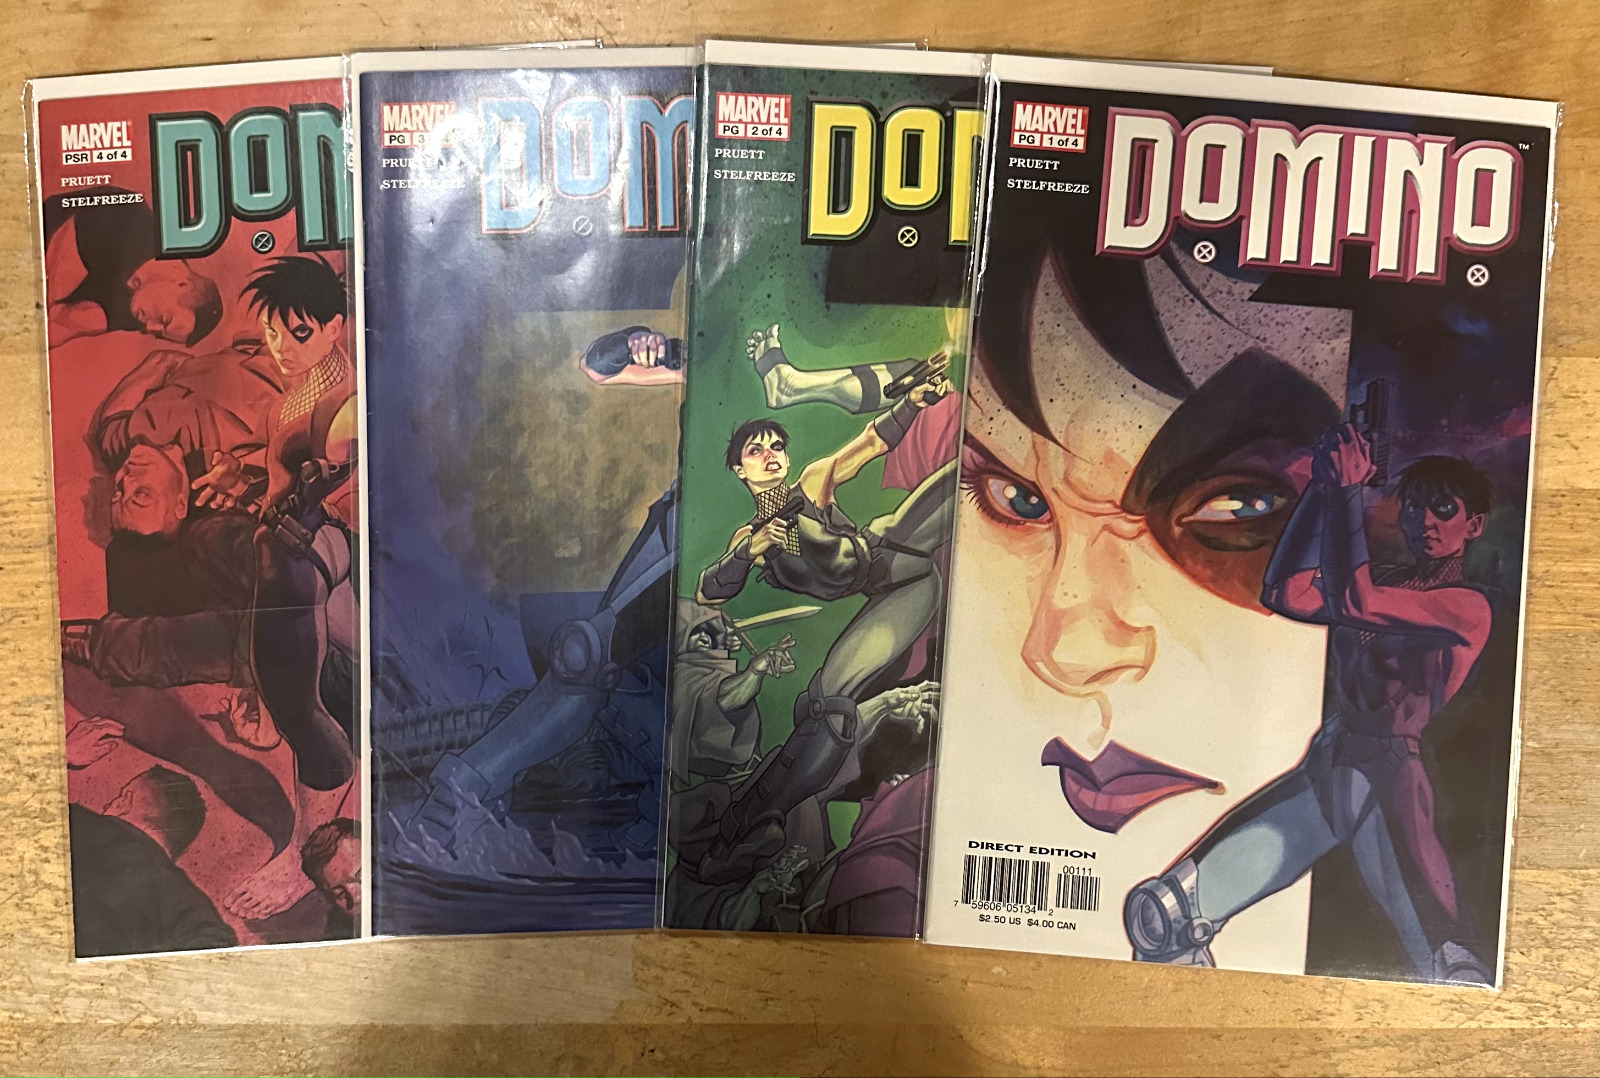 Marvel Comics: Domino Vol. 2 (2003) #1-4 Complete Set